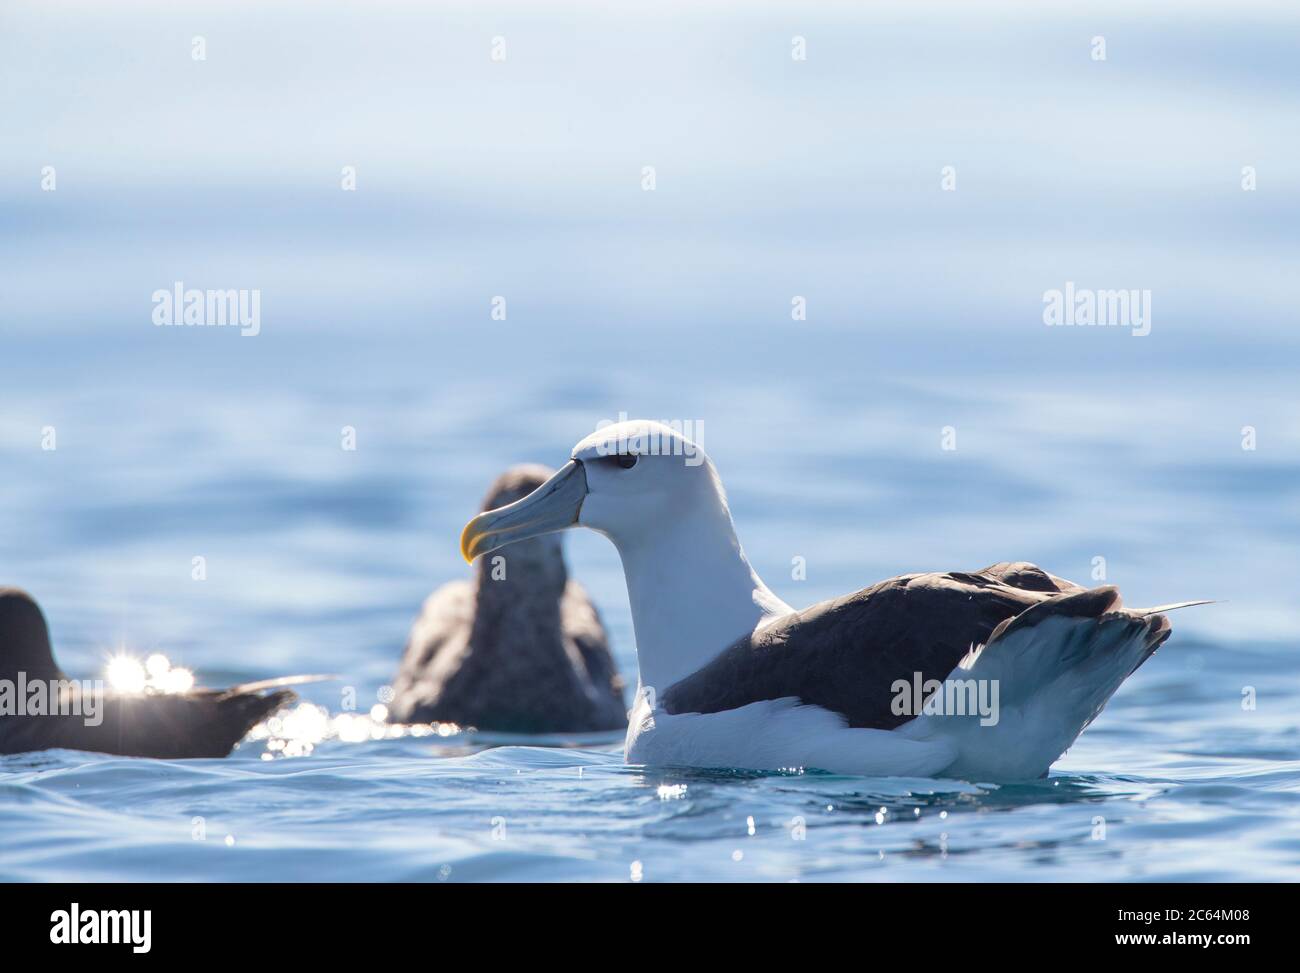 Albatros à capuchon blanc (Thalassarche Steimi) adulte nageant dans l'océan pacifique au large de Kaikoura, île du Sud, Nouvelle-Zélande. Photographié avec rétroéclairage. Banque D'Images